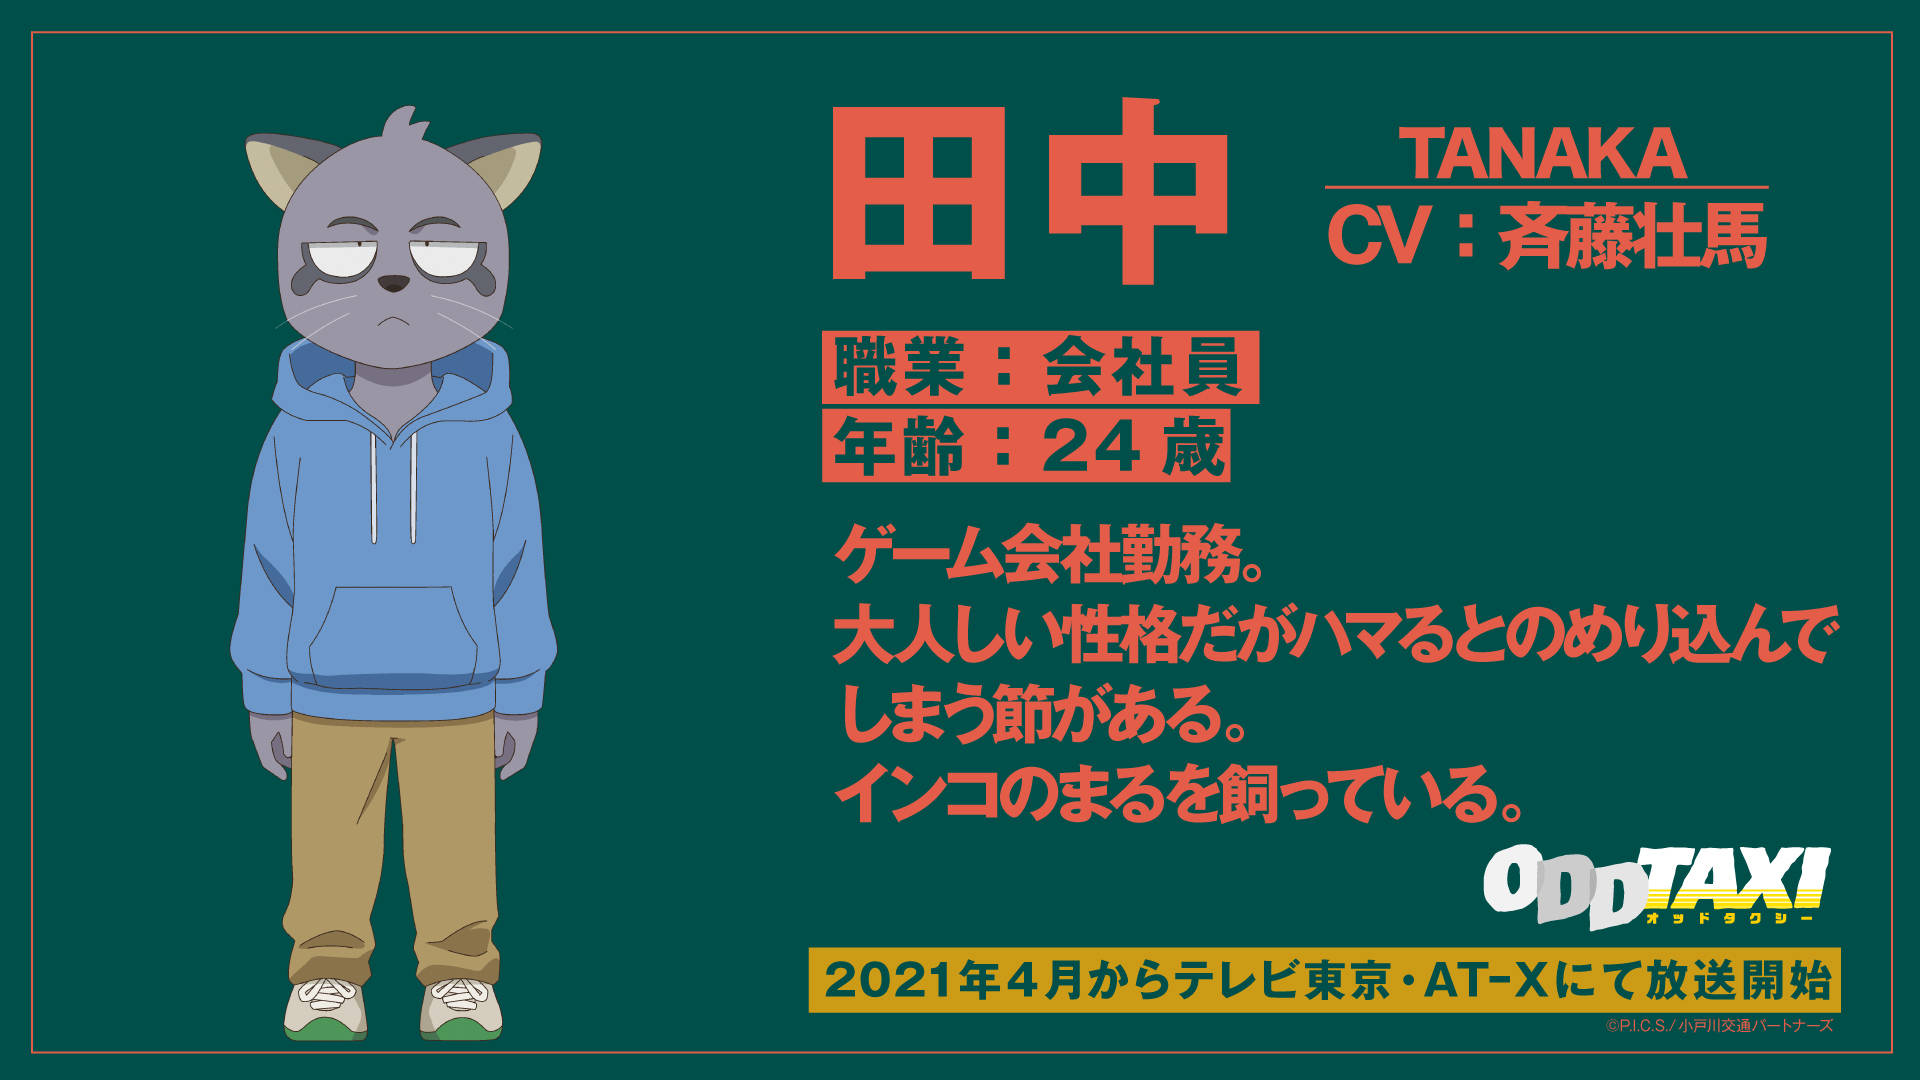 Odd Taxi Tanaka Profile Background